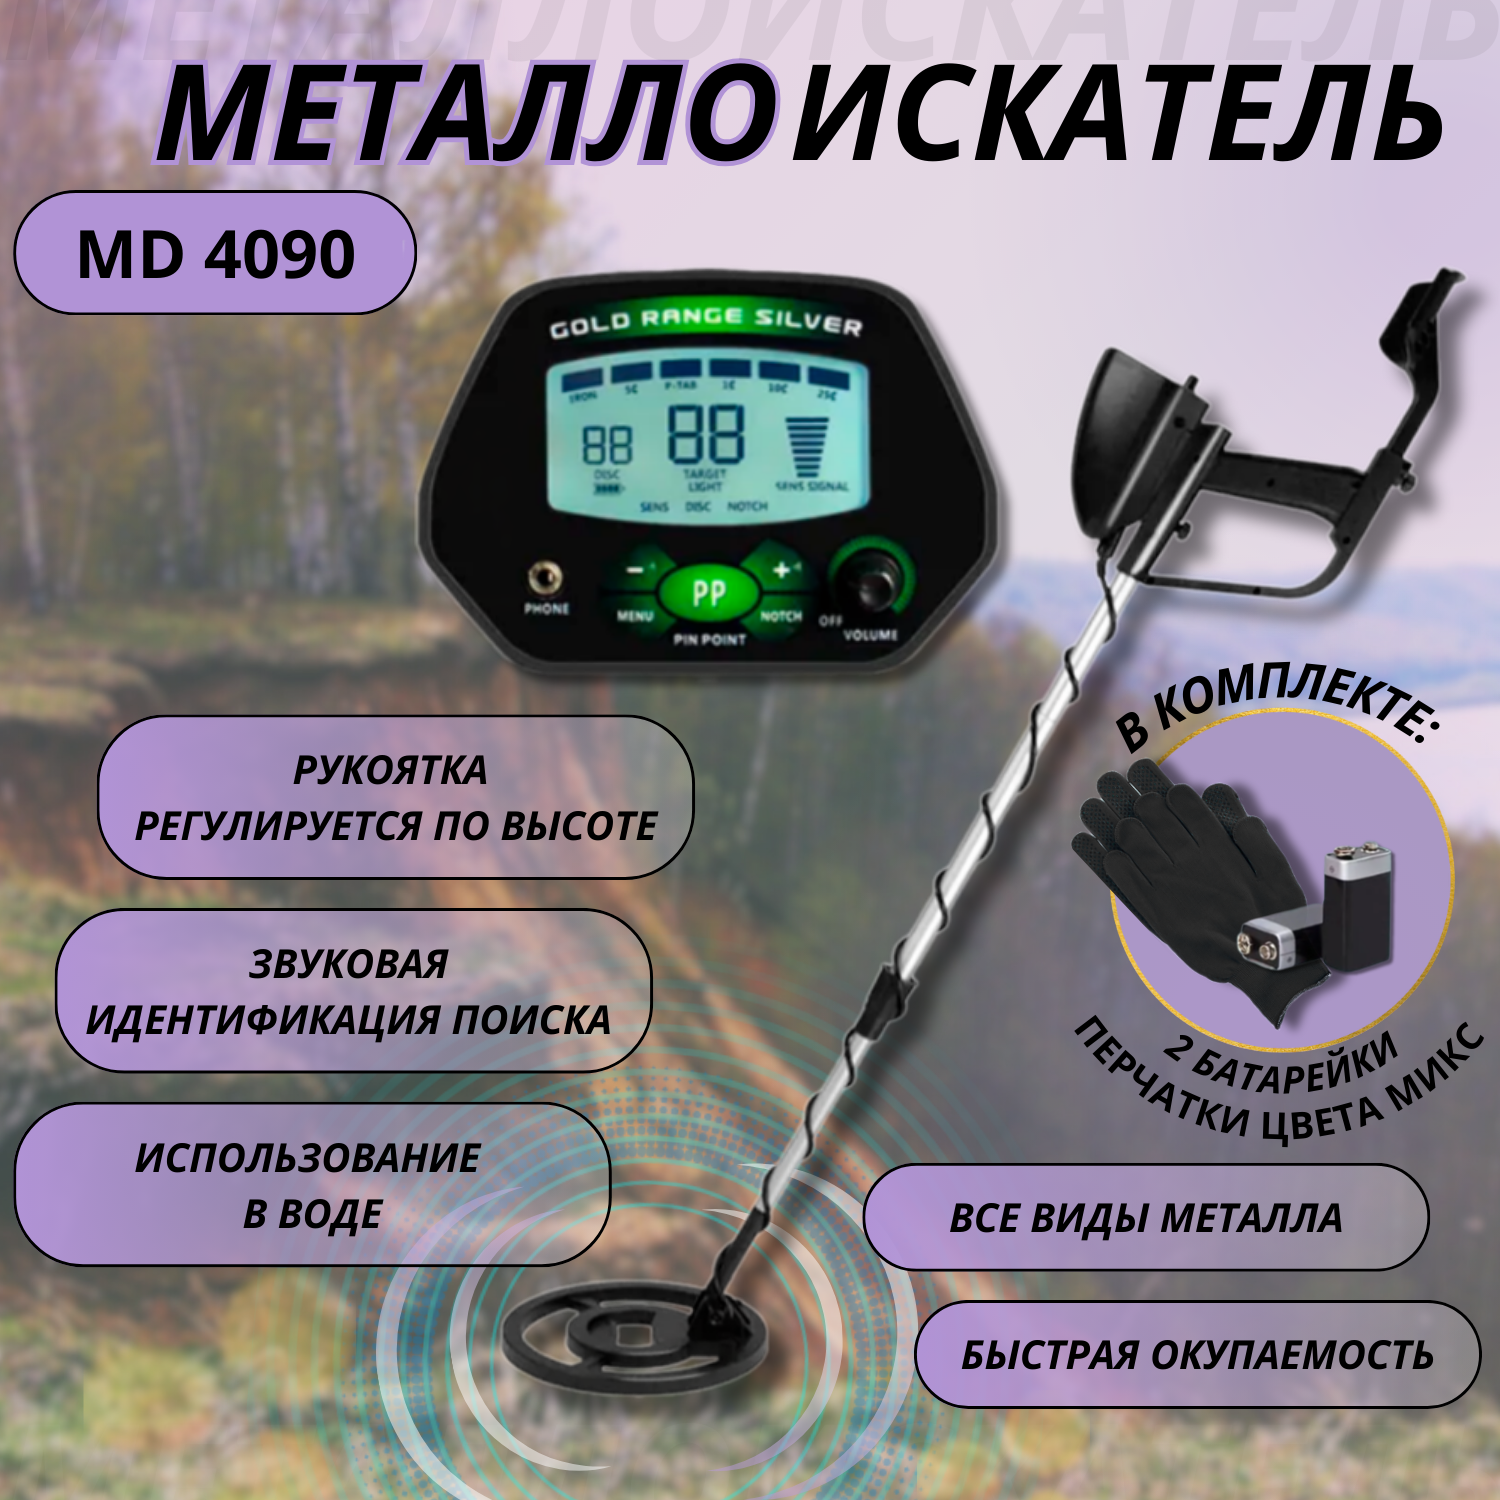 Металлоискатель грунтовый и подводный md 4090